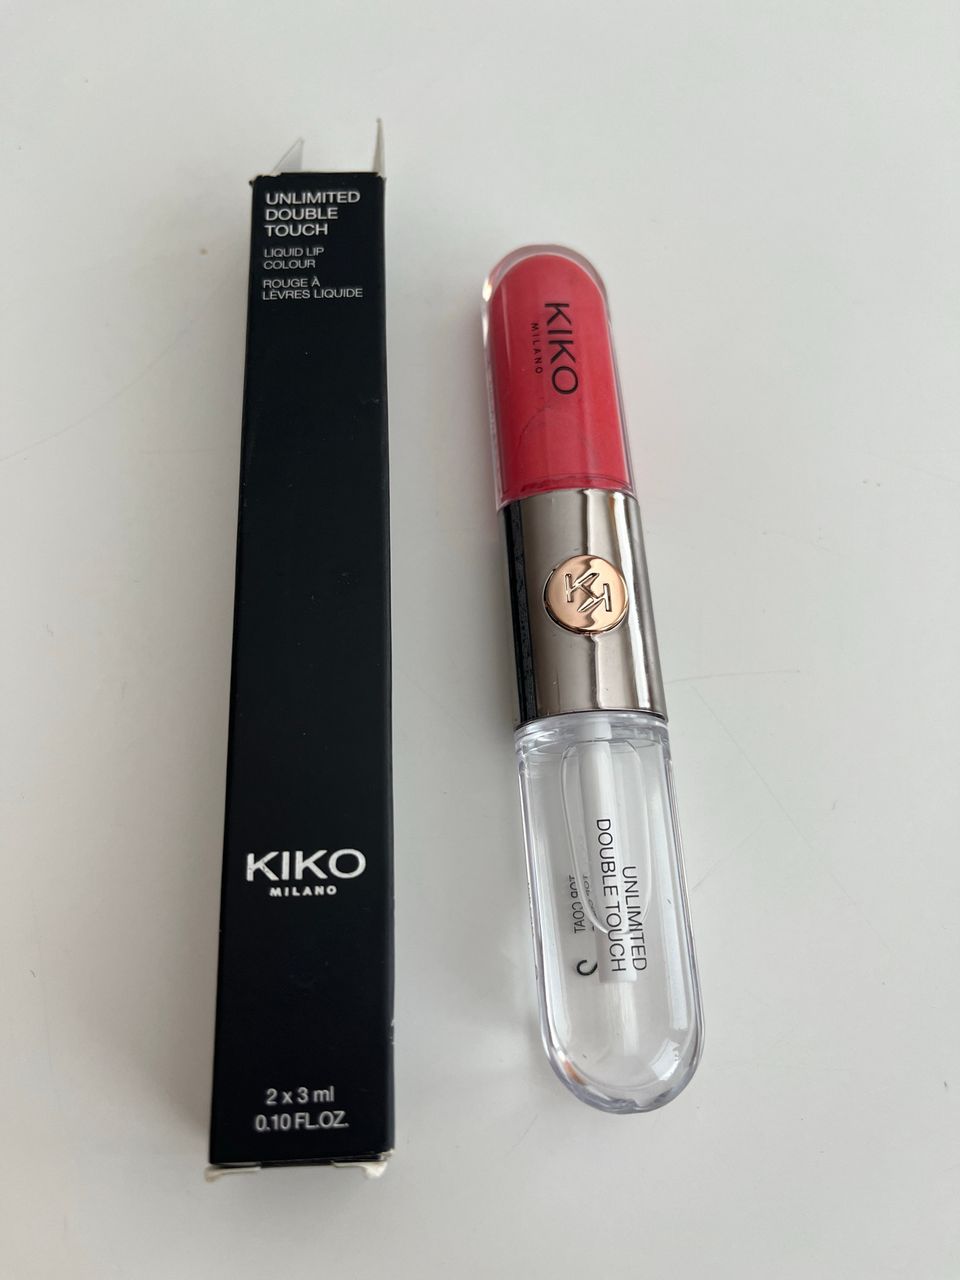 Kiko liquid up colour huulipuna